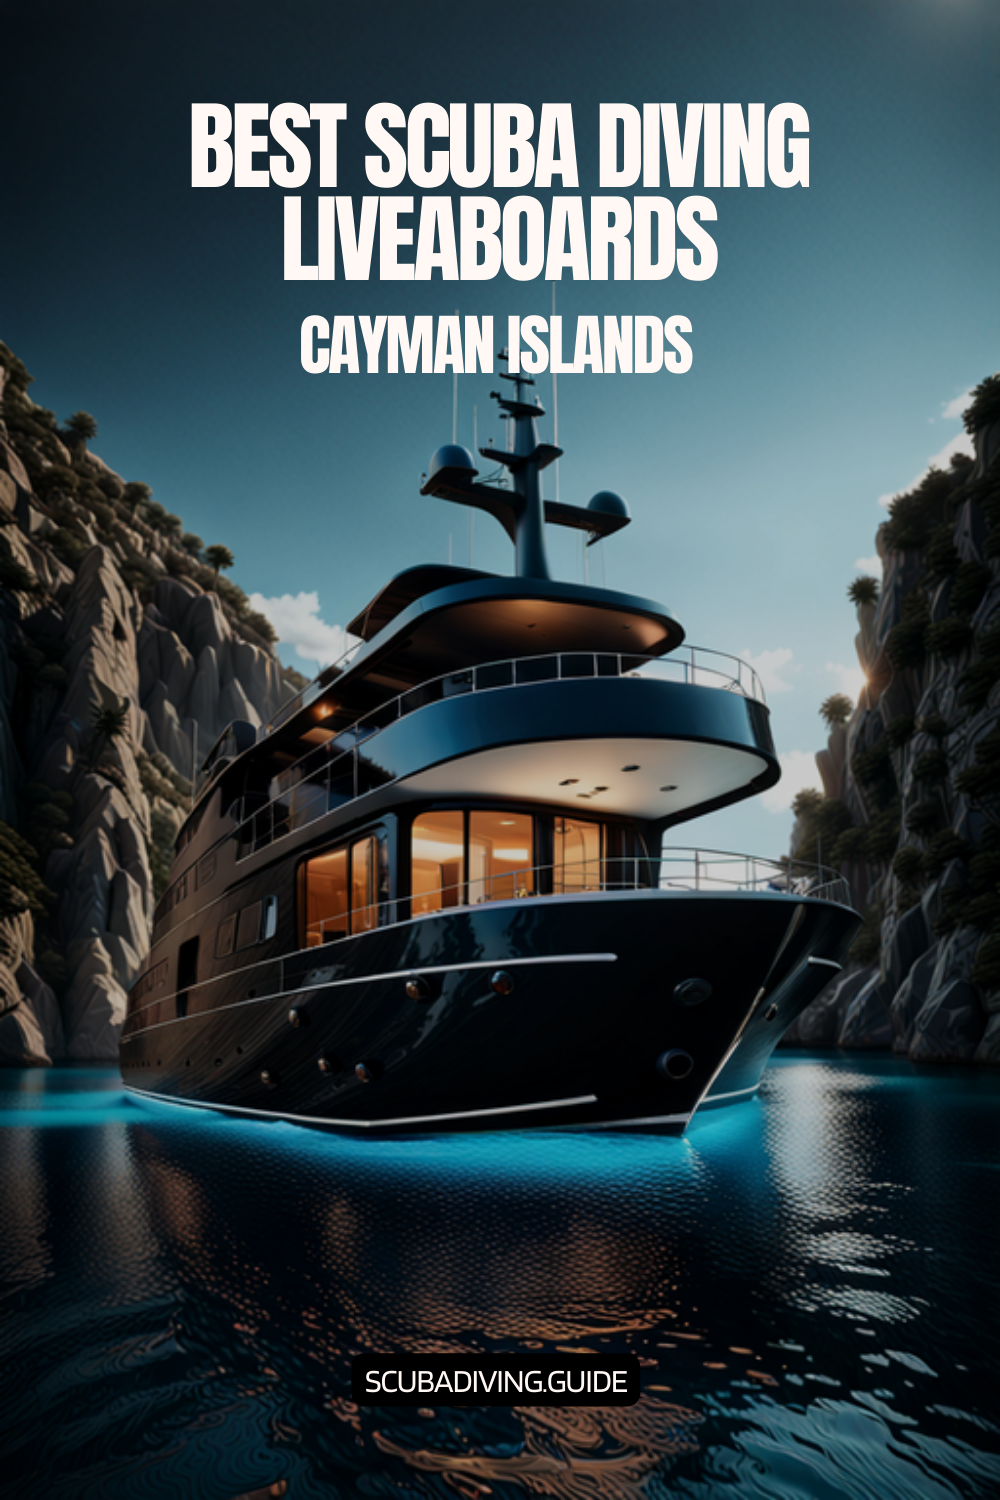 Cayman Islands Liveaboards